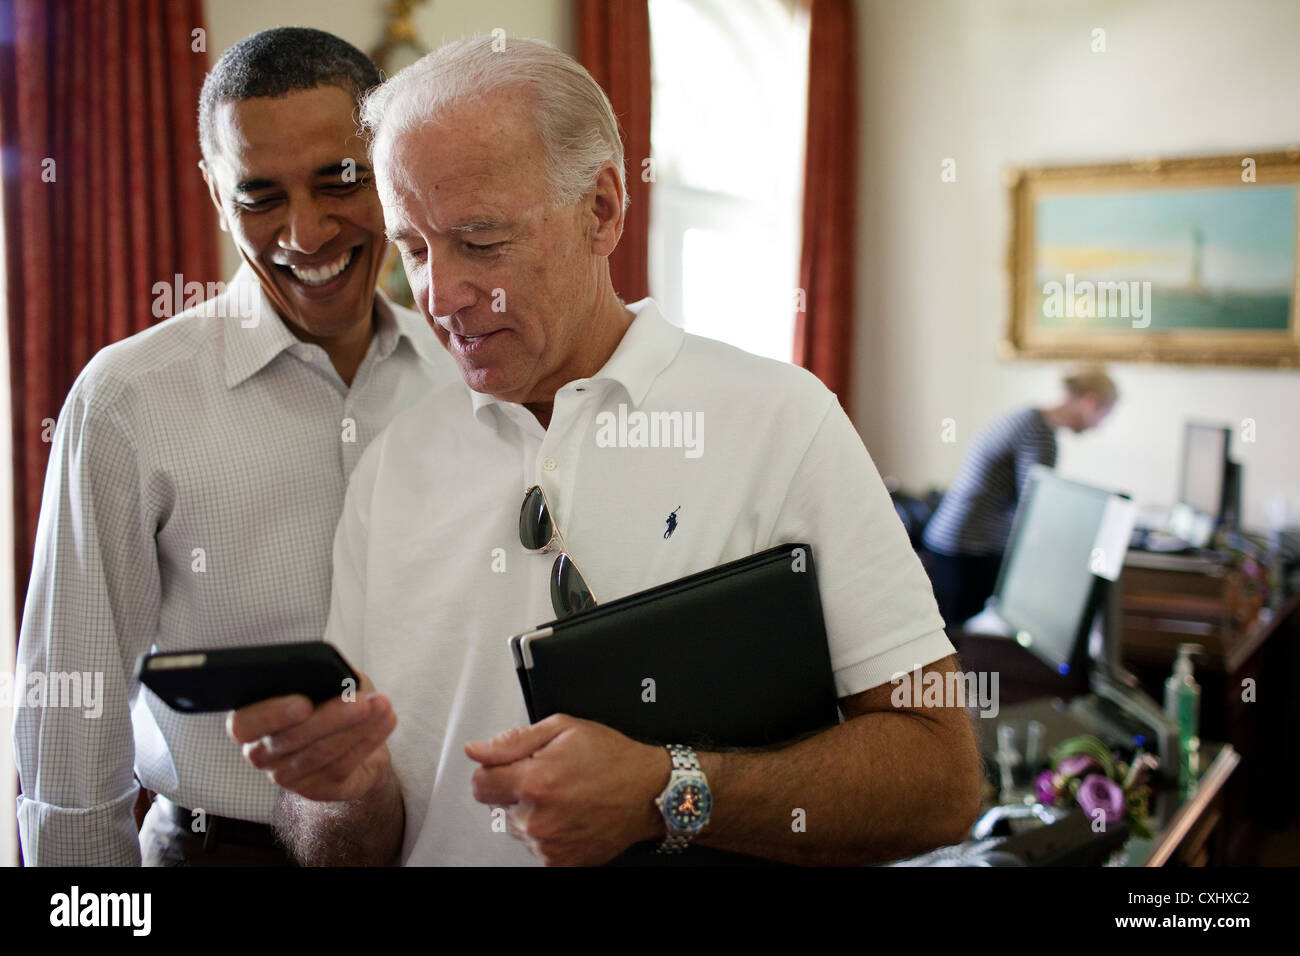 Vize-Präsident Joe Biden und Präsident Barack Obama Blick auf eine app auf einem iPhone 16. Juli 2011 in der äußeren Oval Office des weißen Hauses. Stockfoto